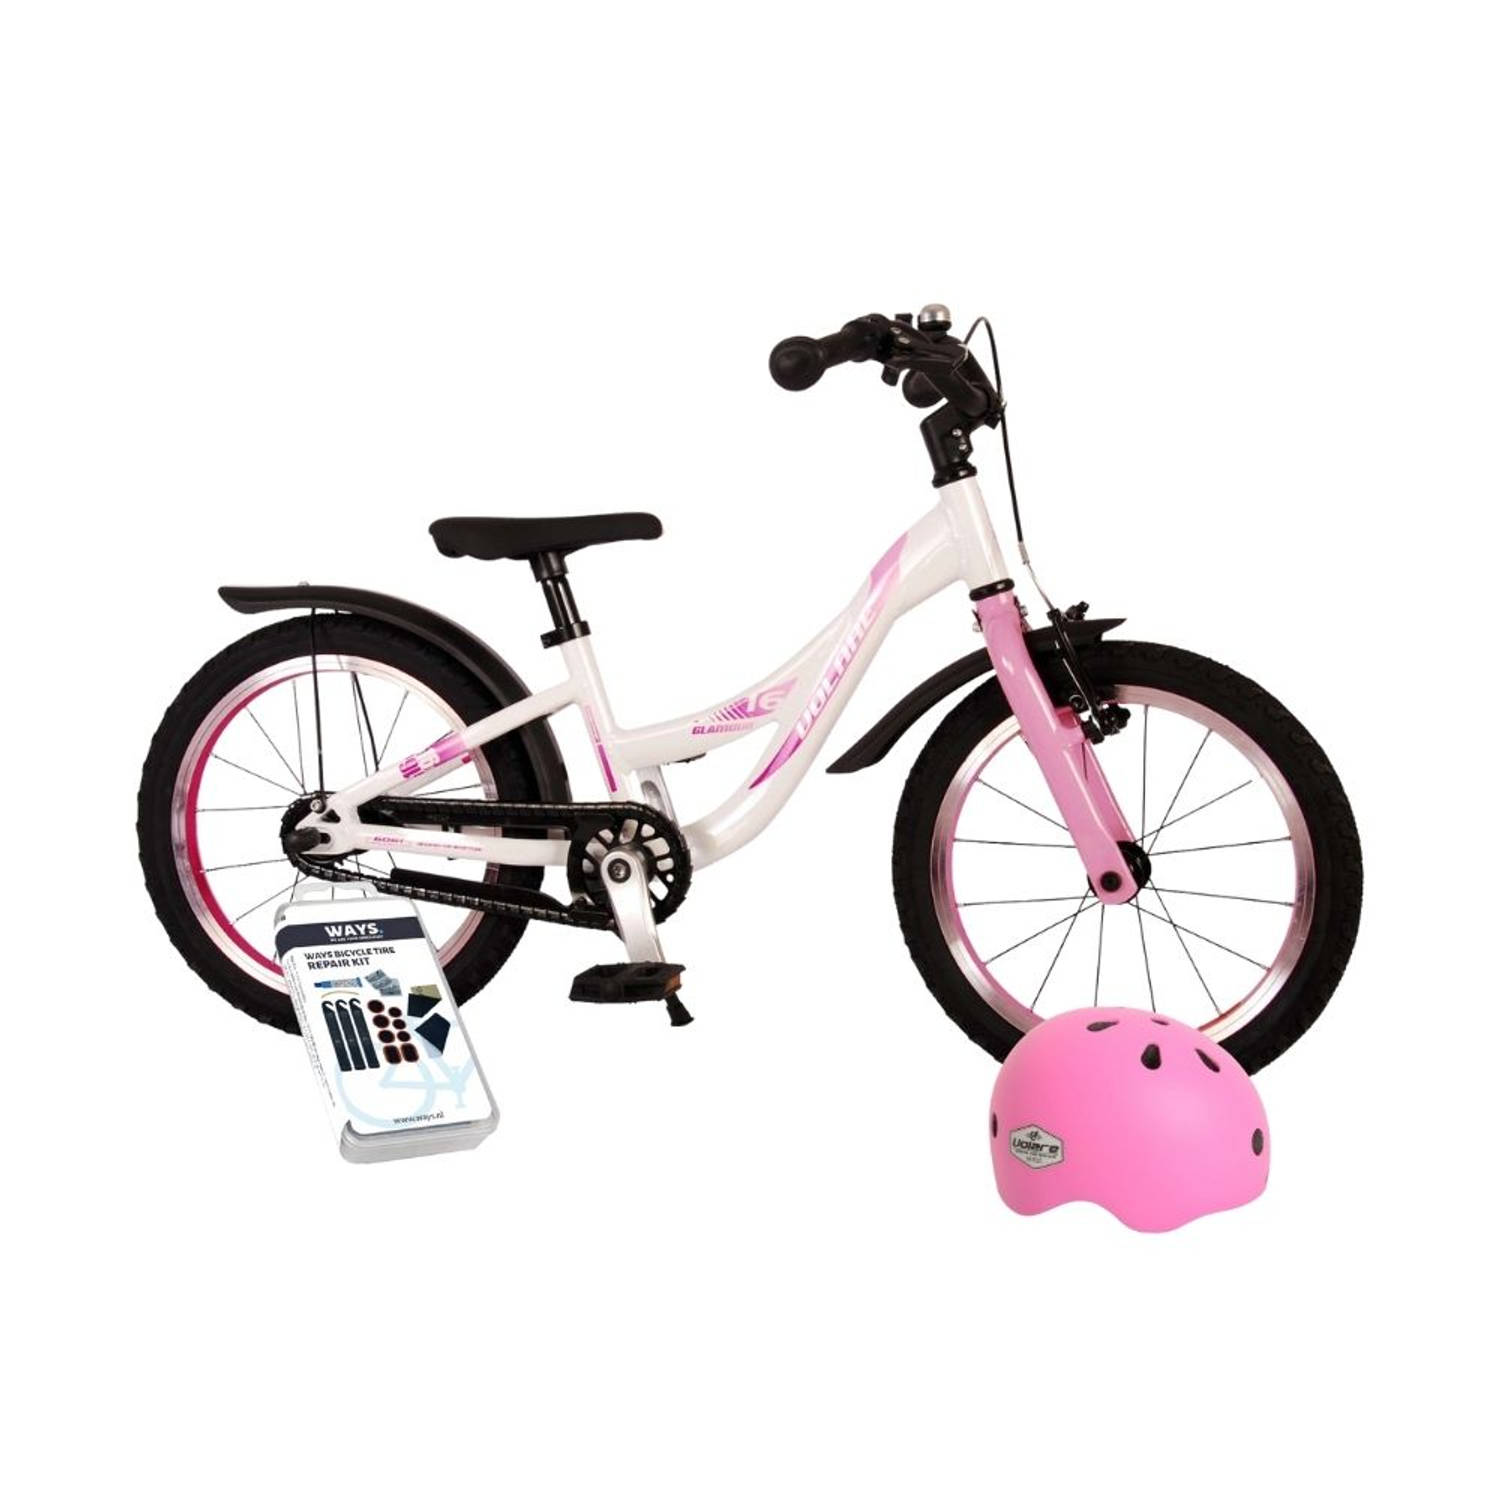 Eenzaamheid Diplomaat bord Volare Kinderfiets Glamour - 16 inch - Wit/Roze - Met fietshelm en  accessoires | Blokker